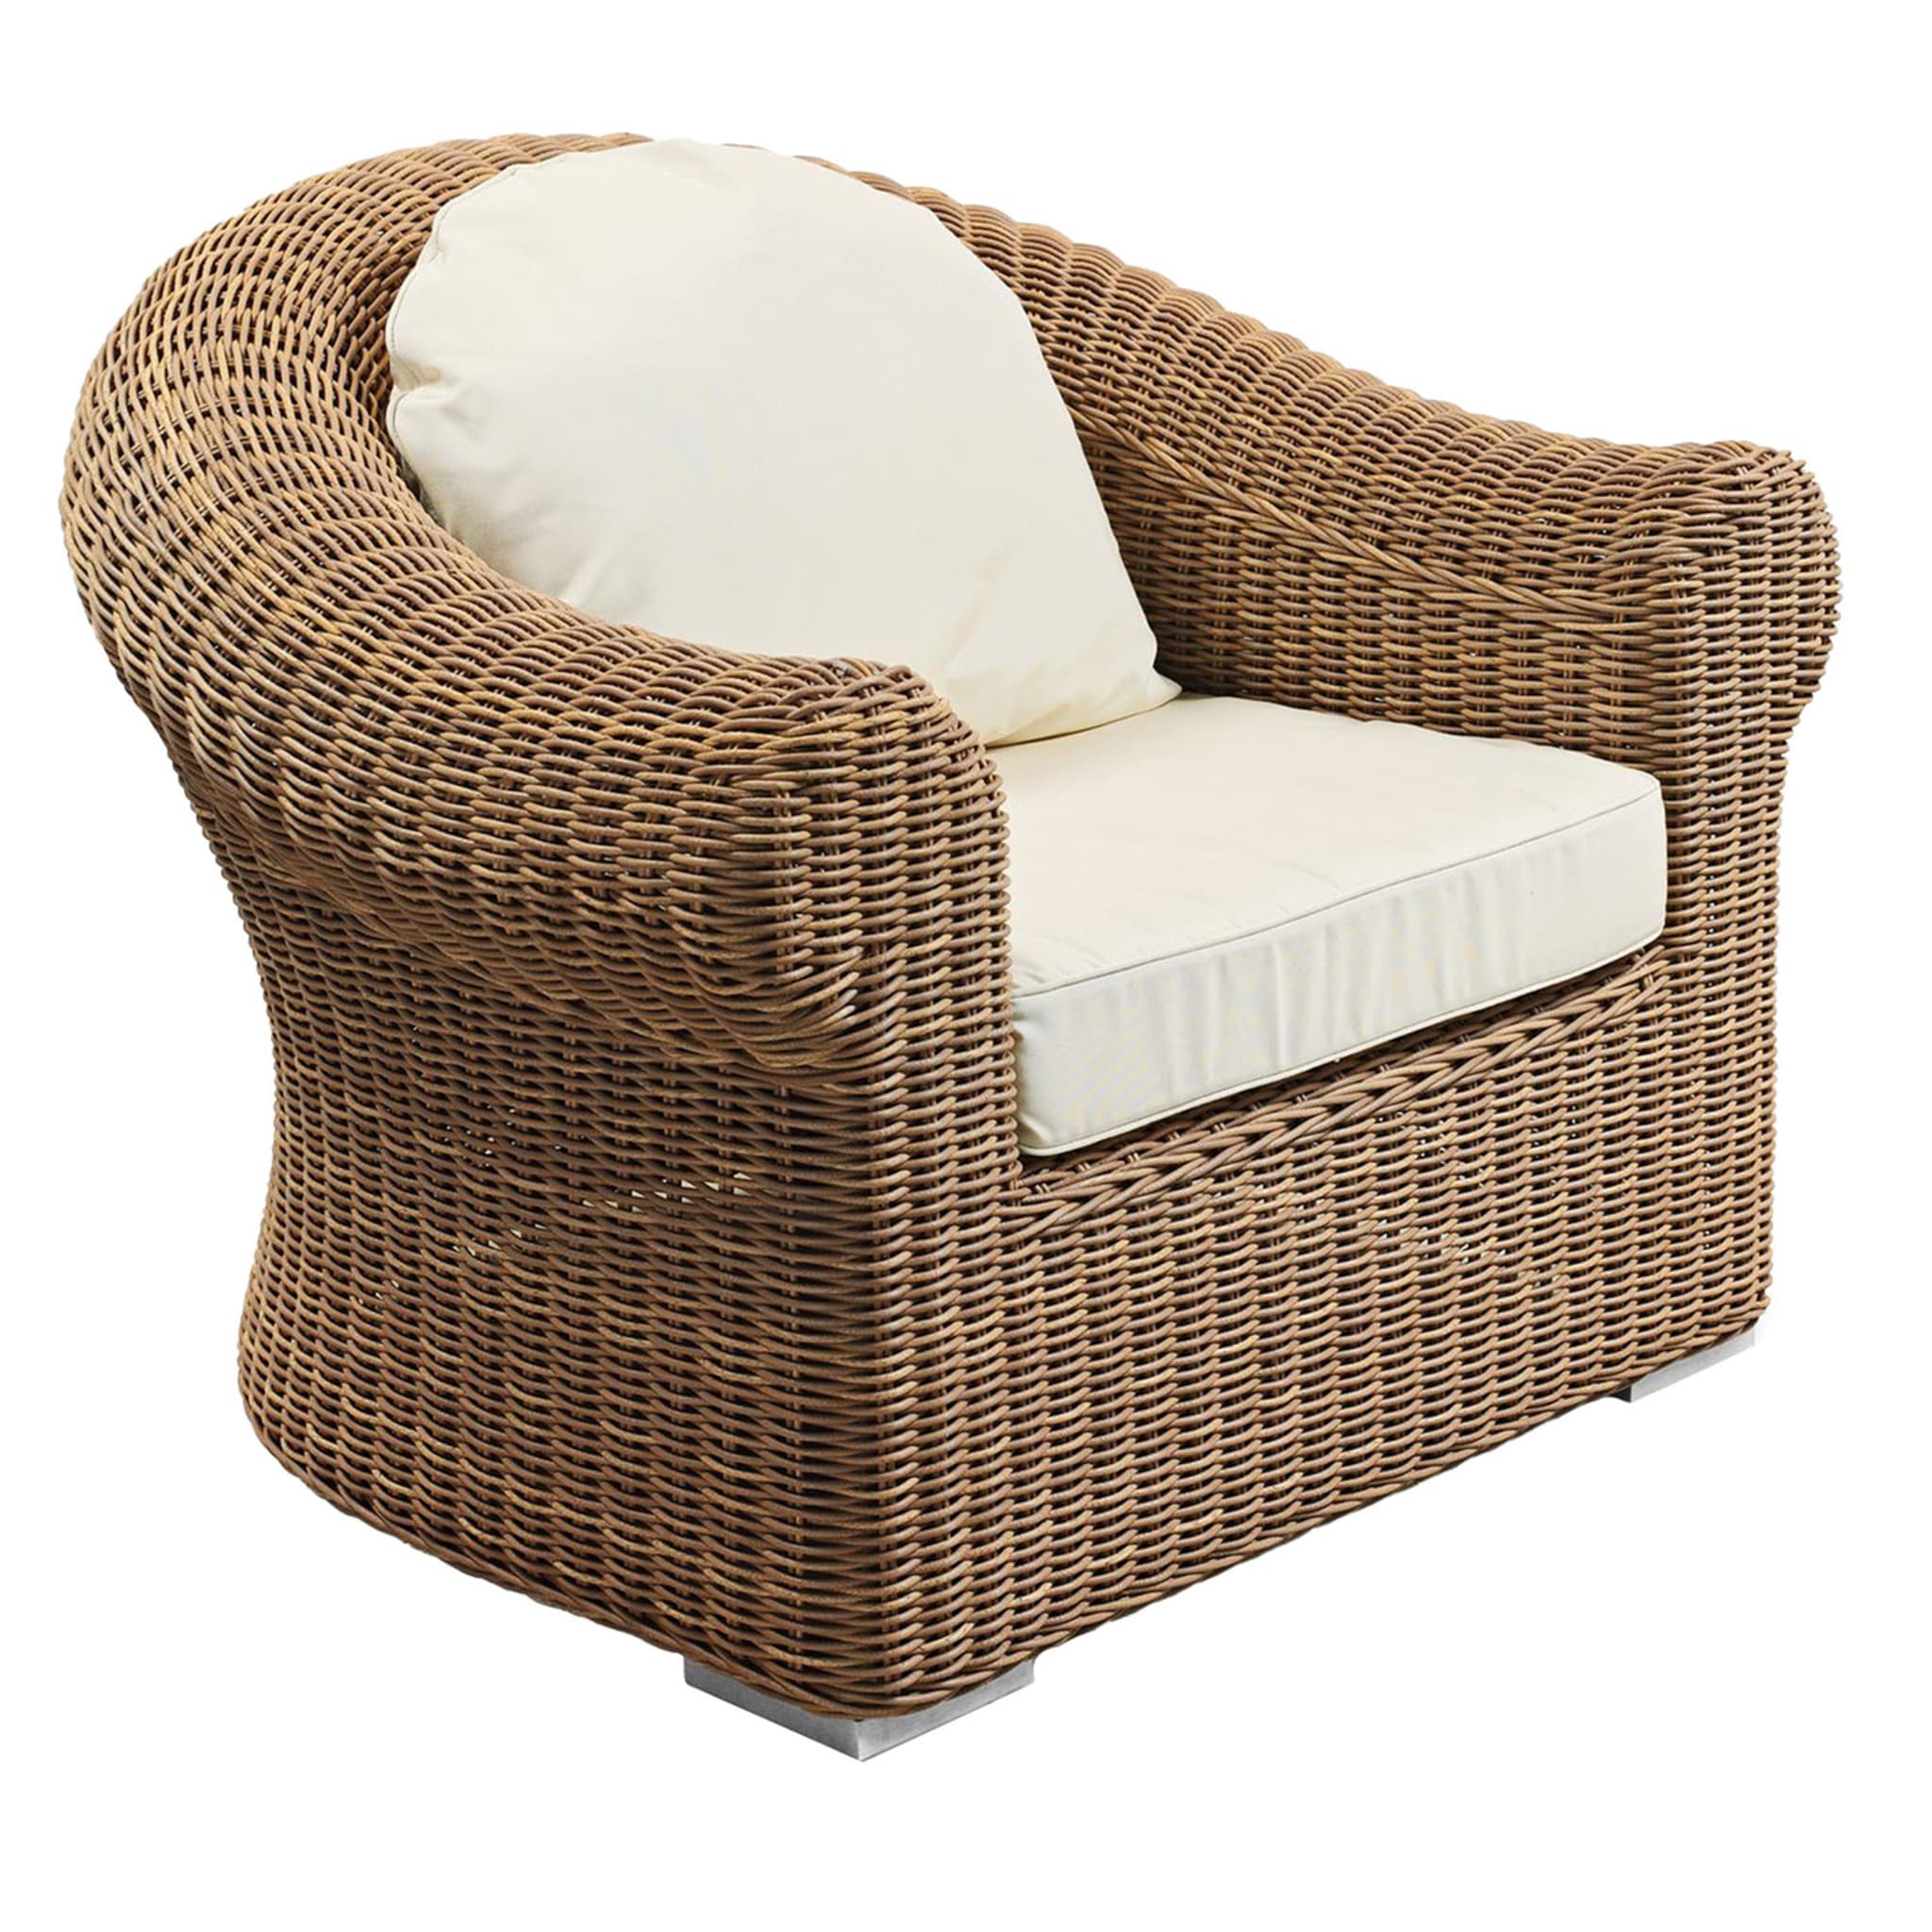 Cloe Wicker Armchair by Braid Design Lab - Main view